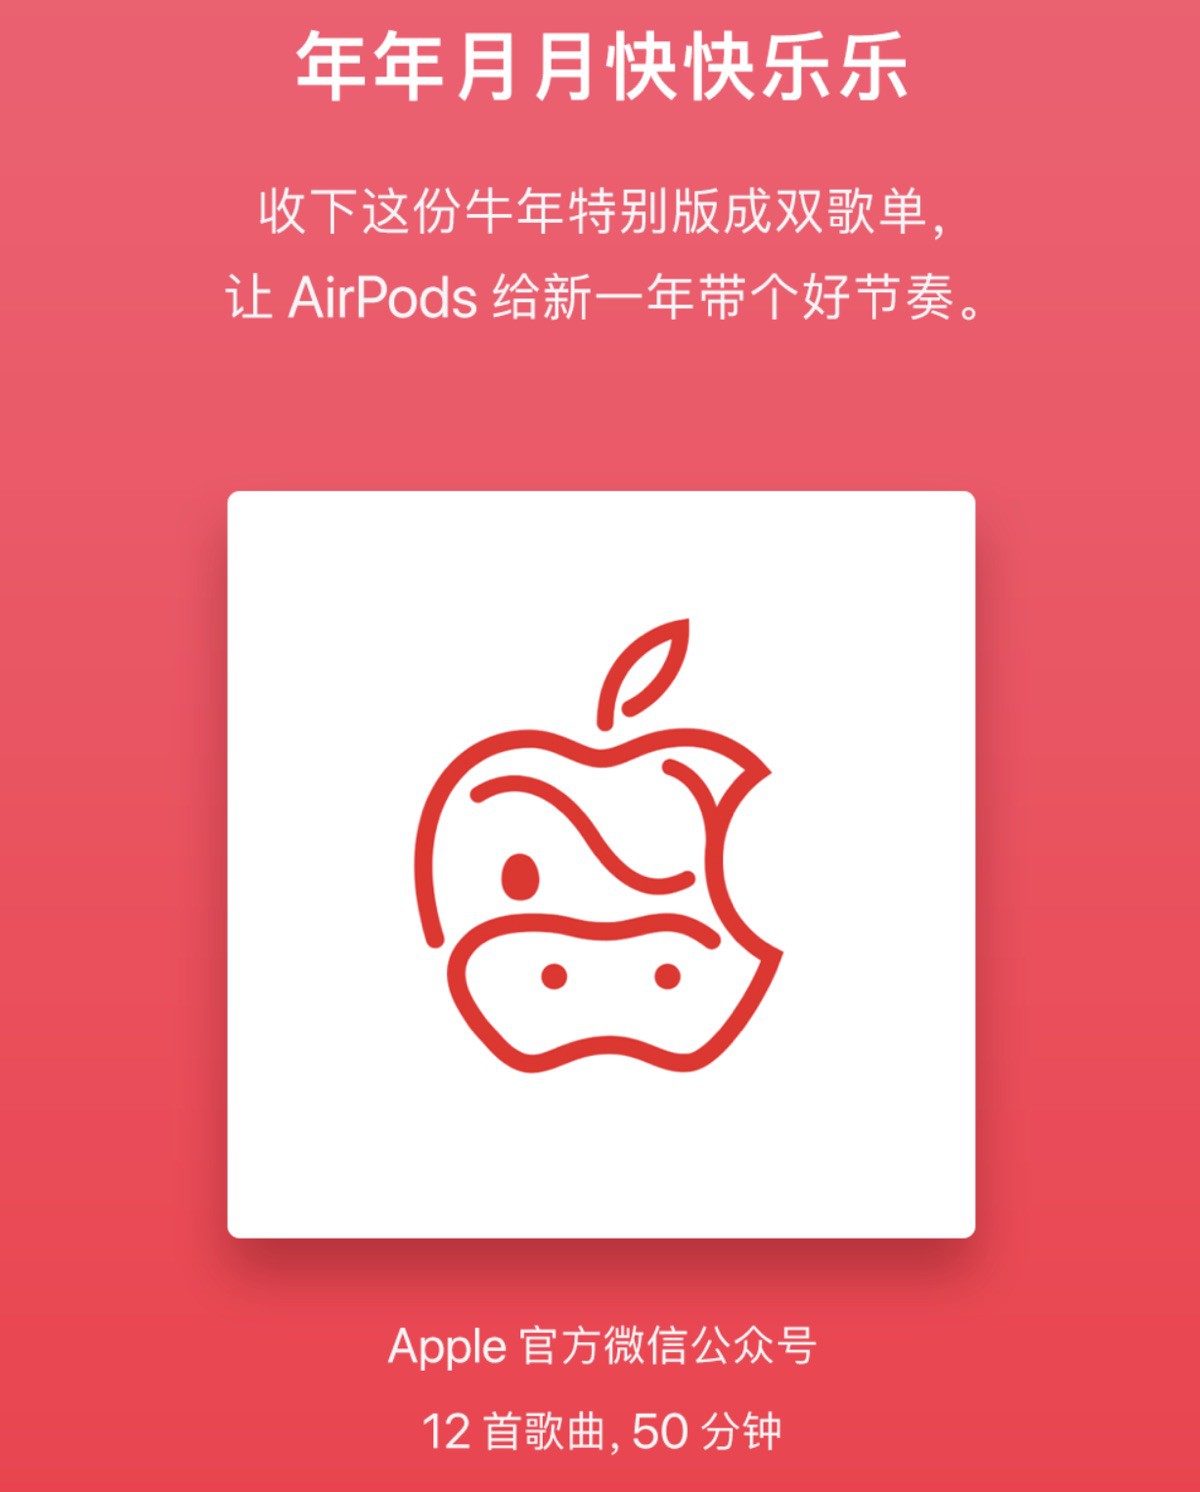 Apple Store Capodanno Cinese